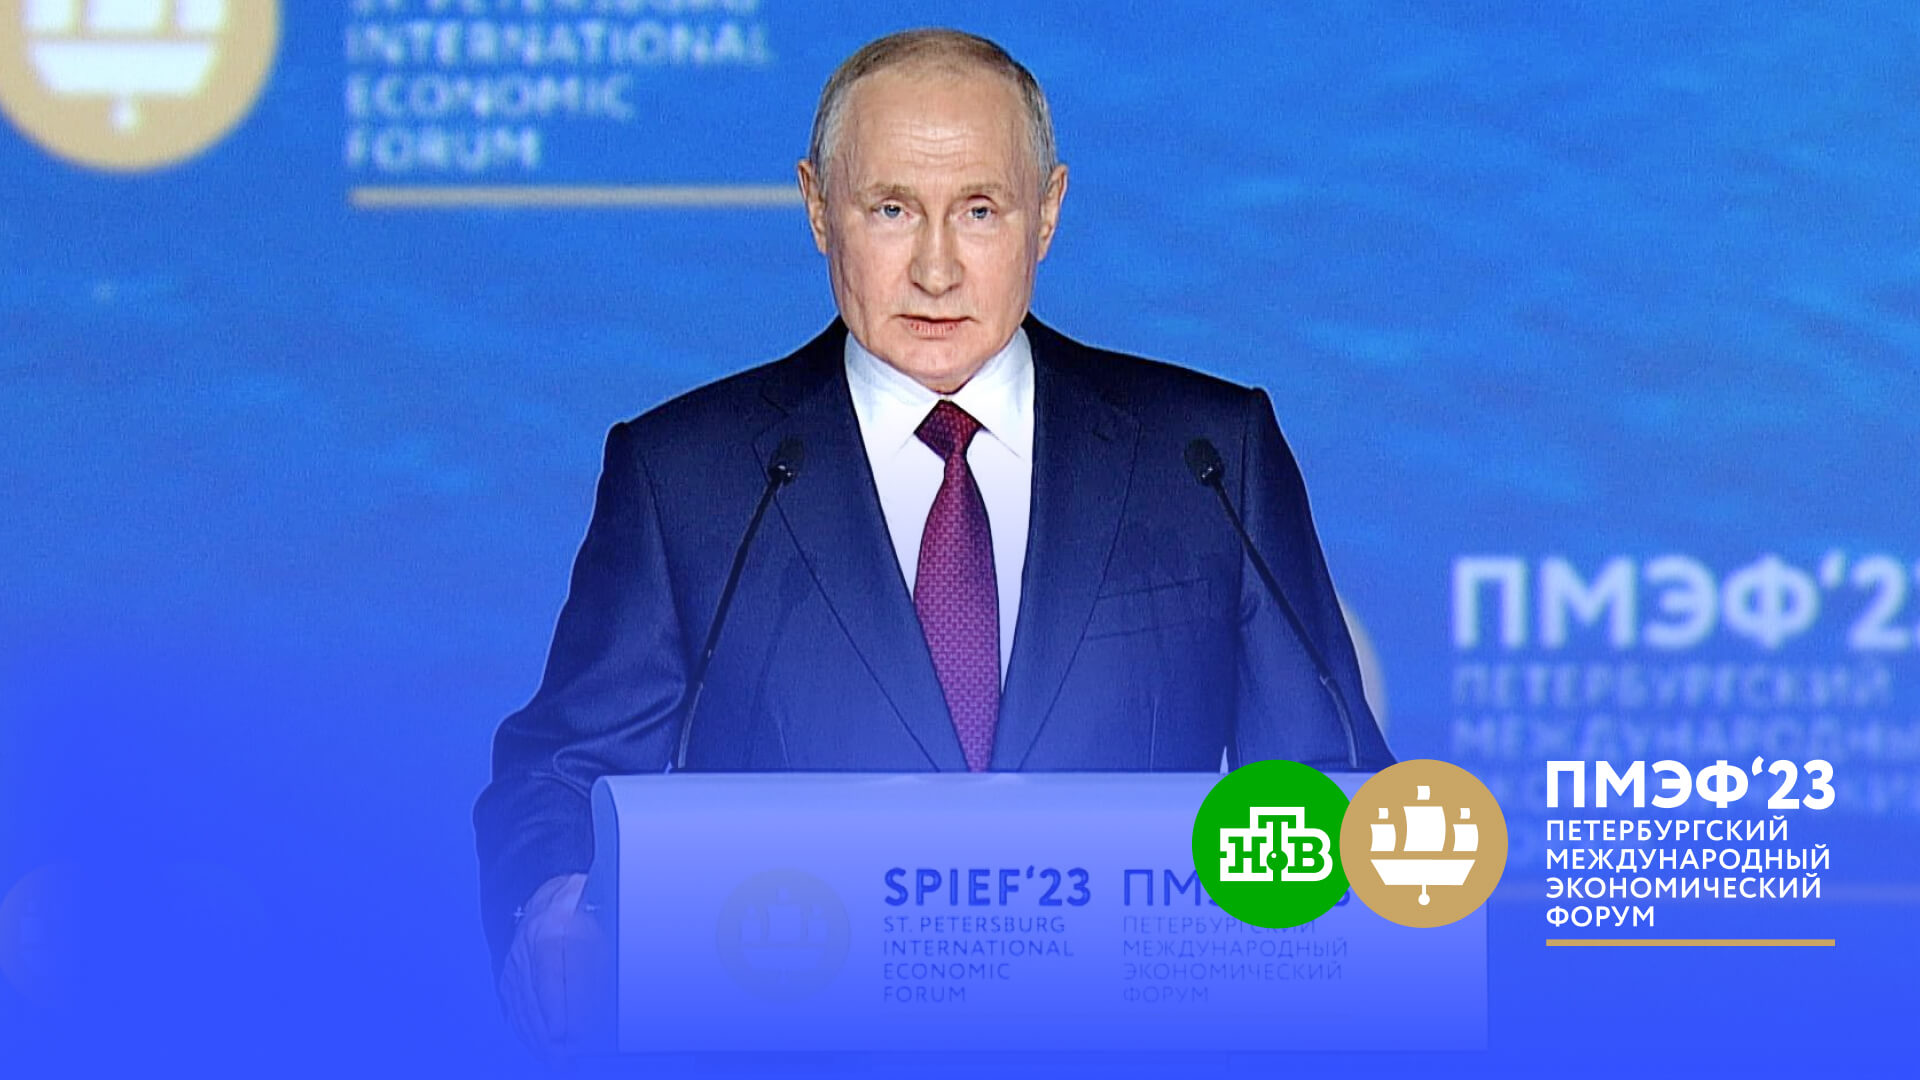 Путин: РФ нарастила торговлю со странами, лидеры которых не поддаются хамскому давлению